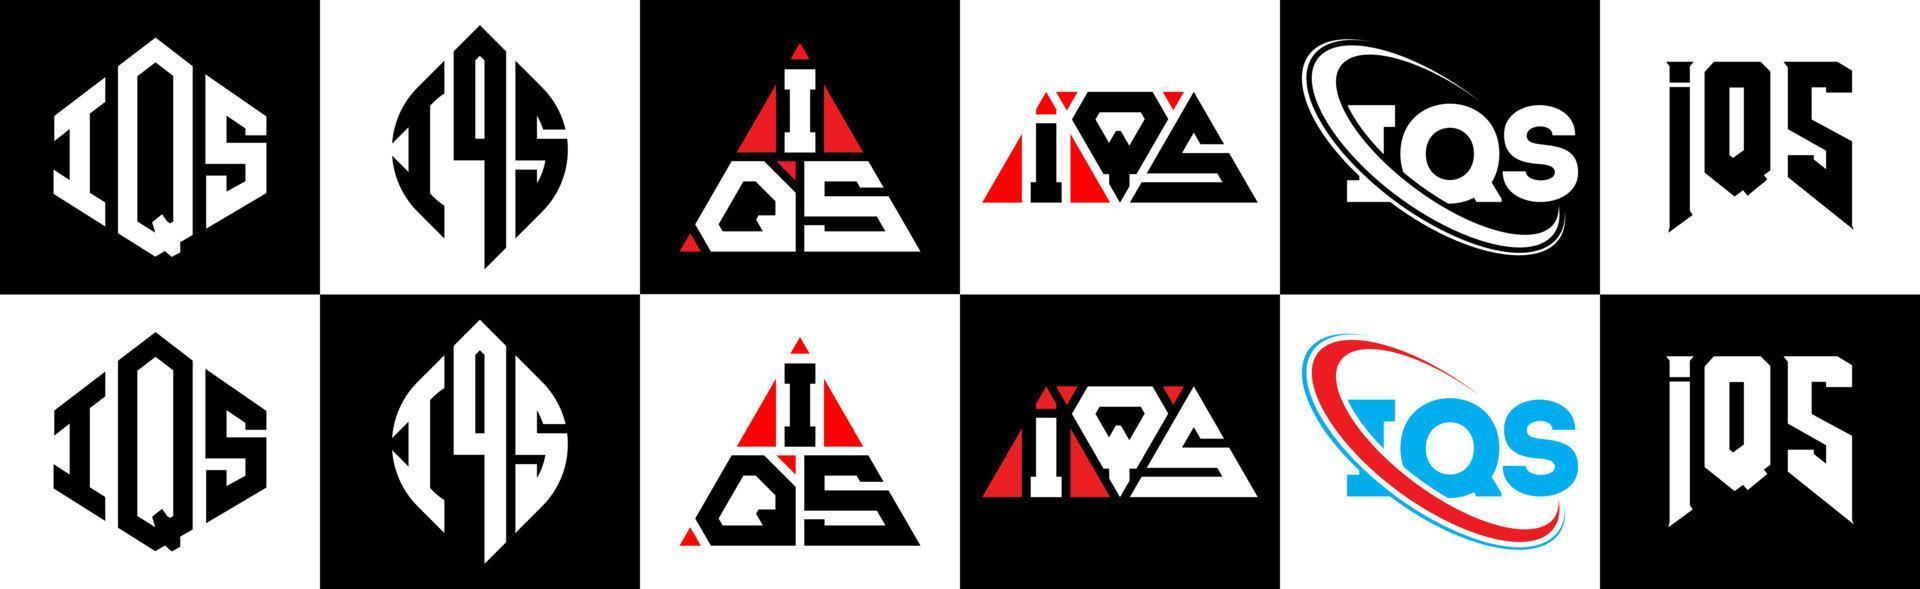 création de logo de lettre iqs en six styles. polygone iqs, cercle, triangle, hexagone, style plat et simple avec logo de lettre de variation de couleur noir et blanc dans un plan de travail. logo minimaliste et classique iqs vecteur